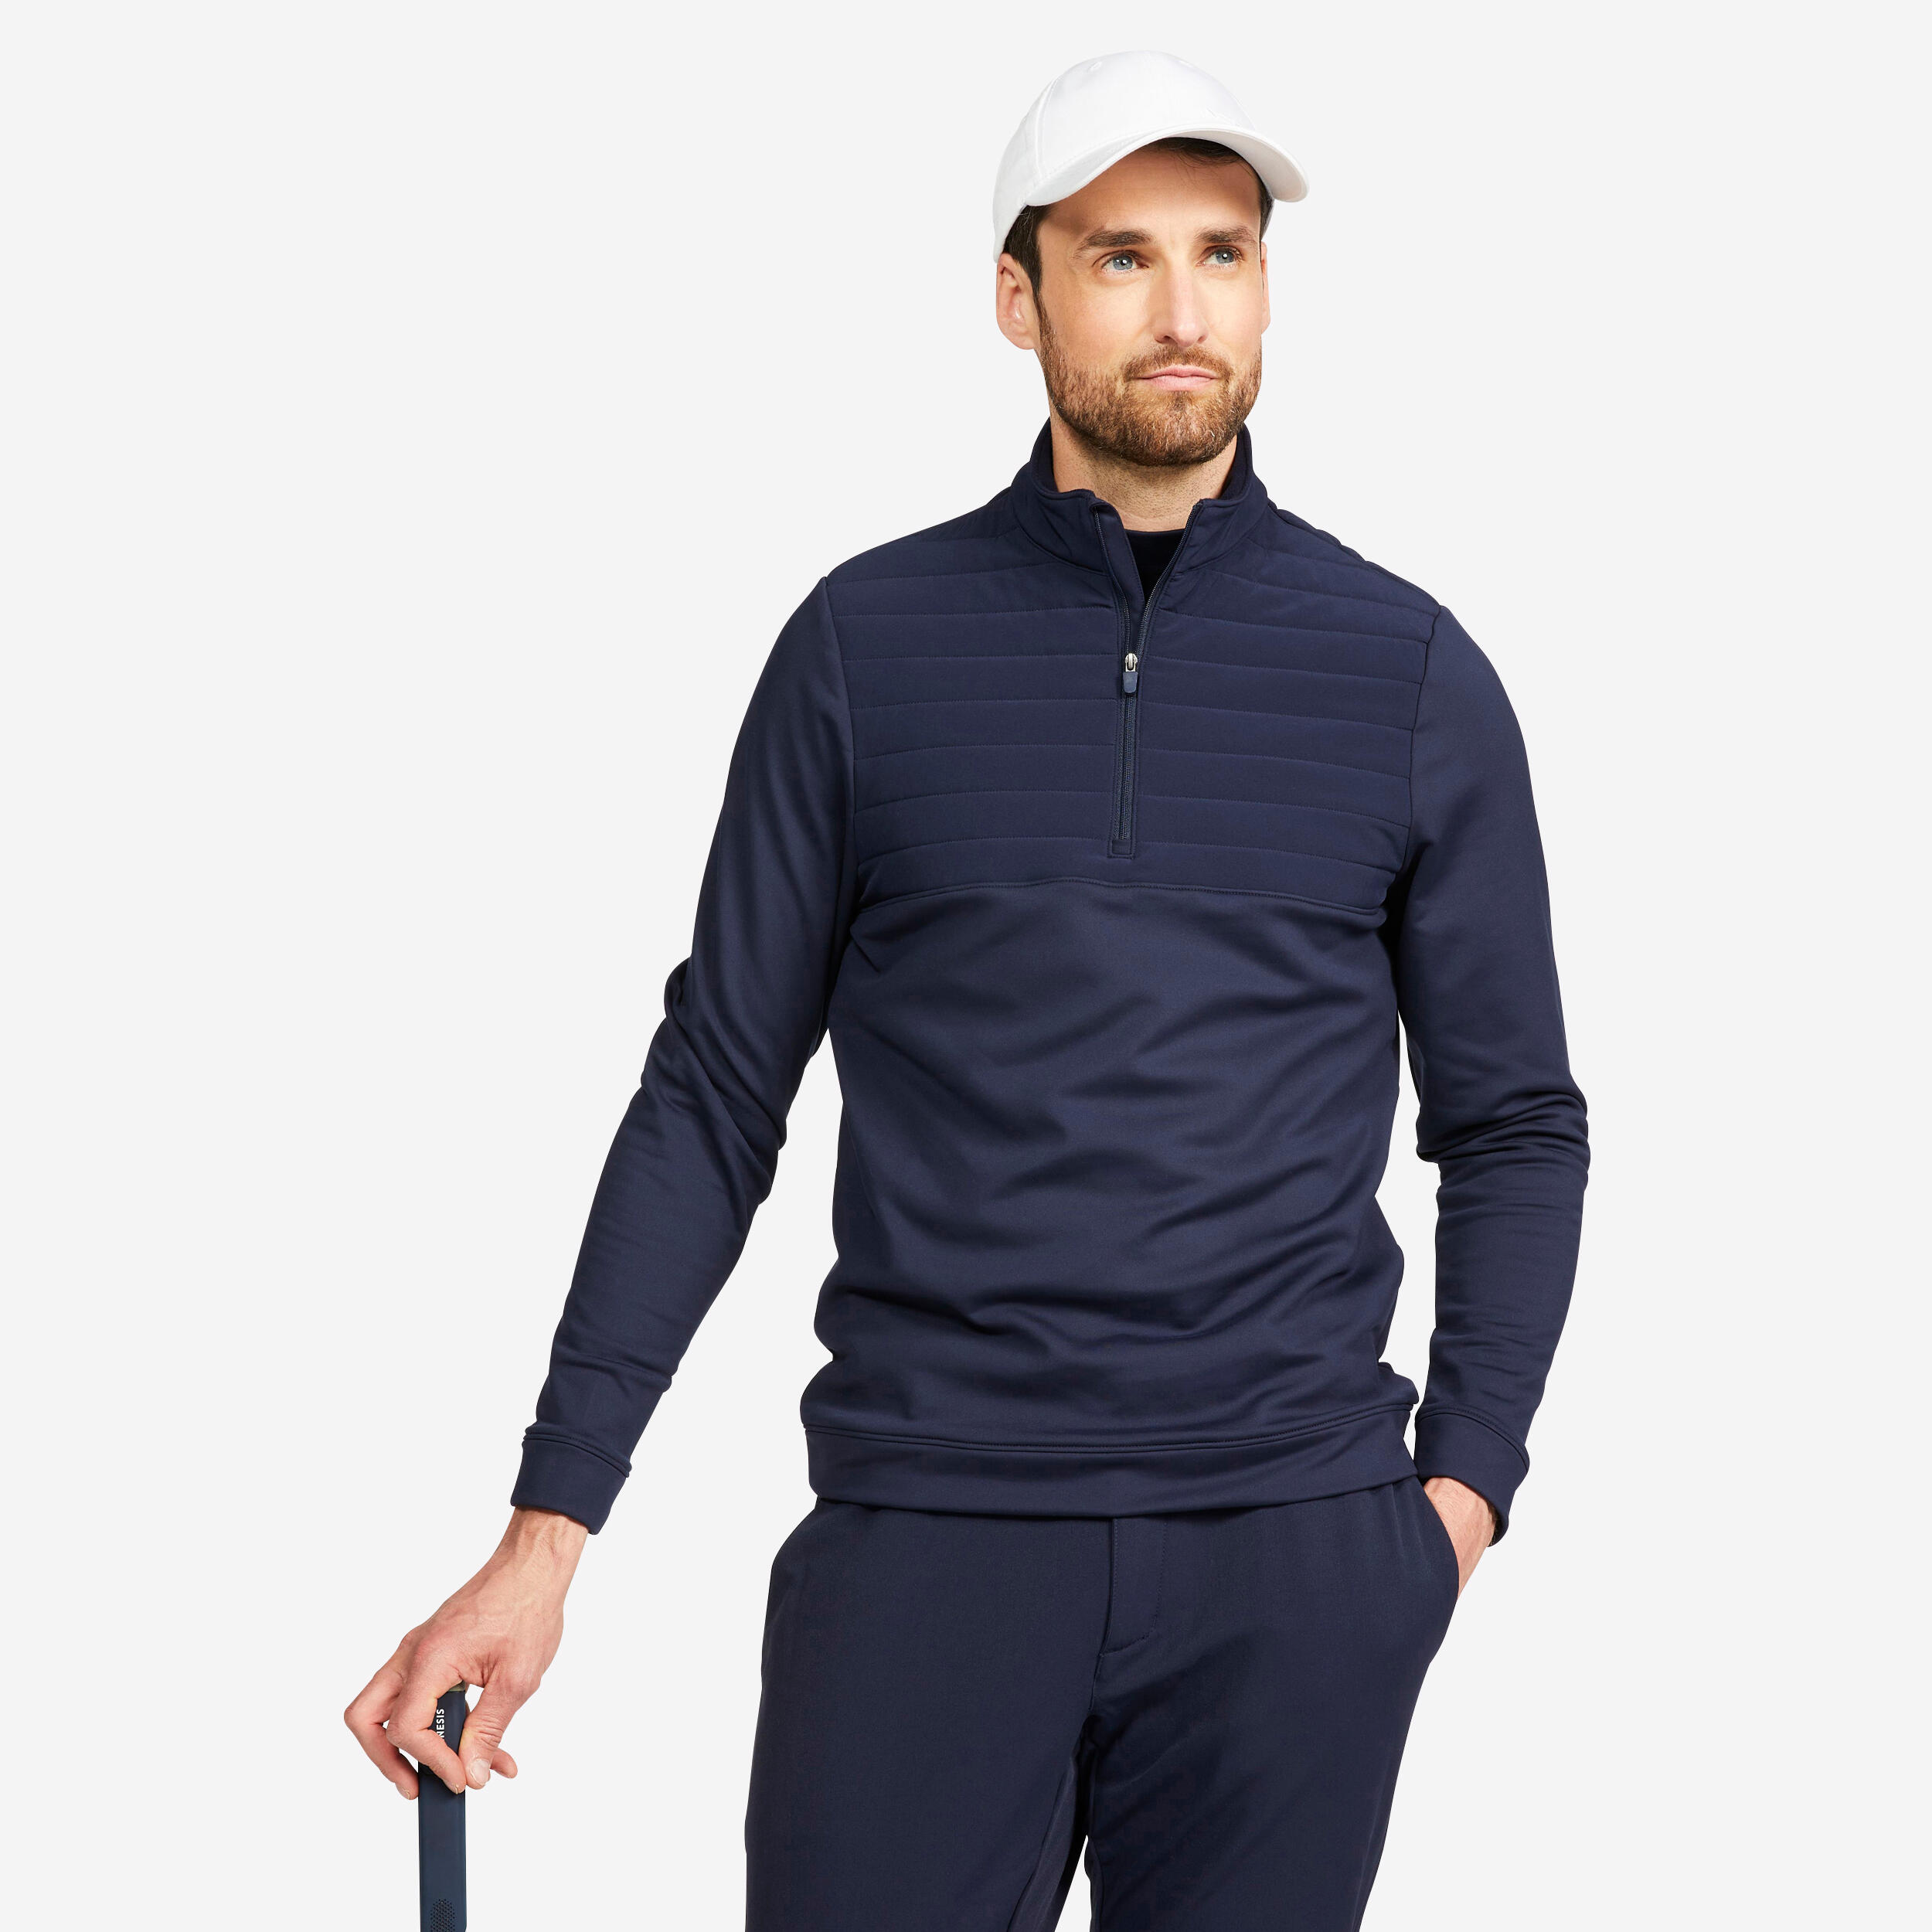 Men's golf sweatshirt - CW500 navy blue 1/5